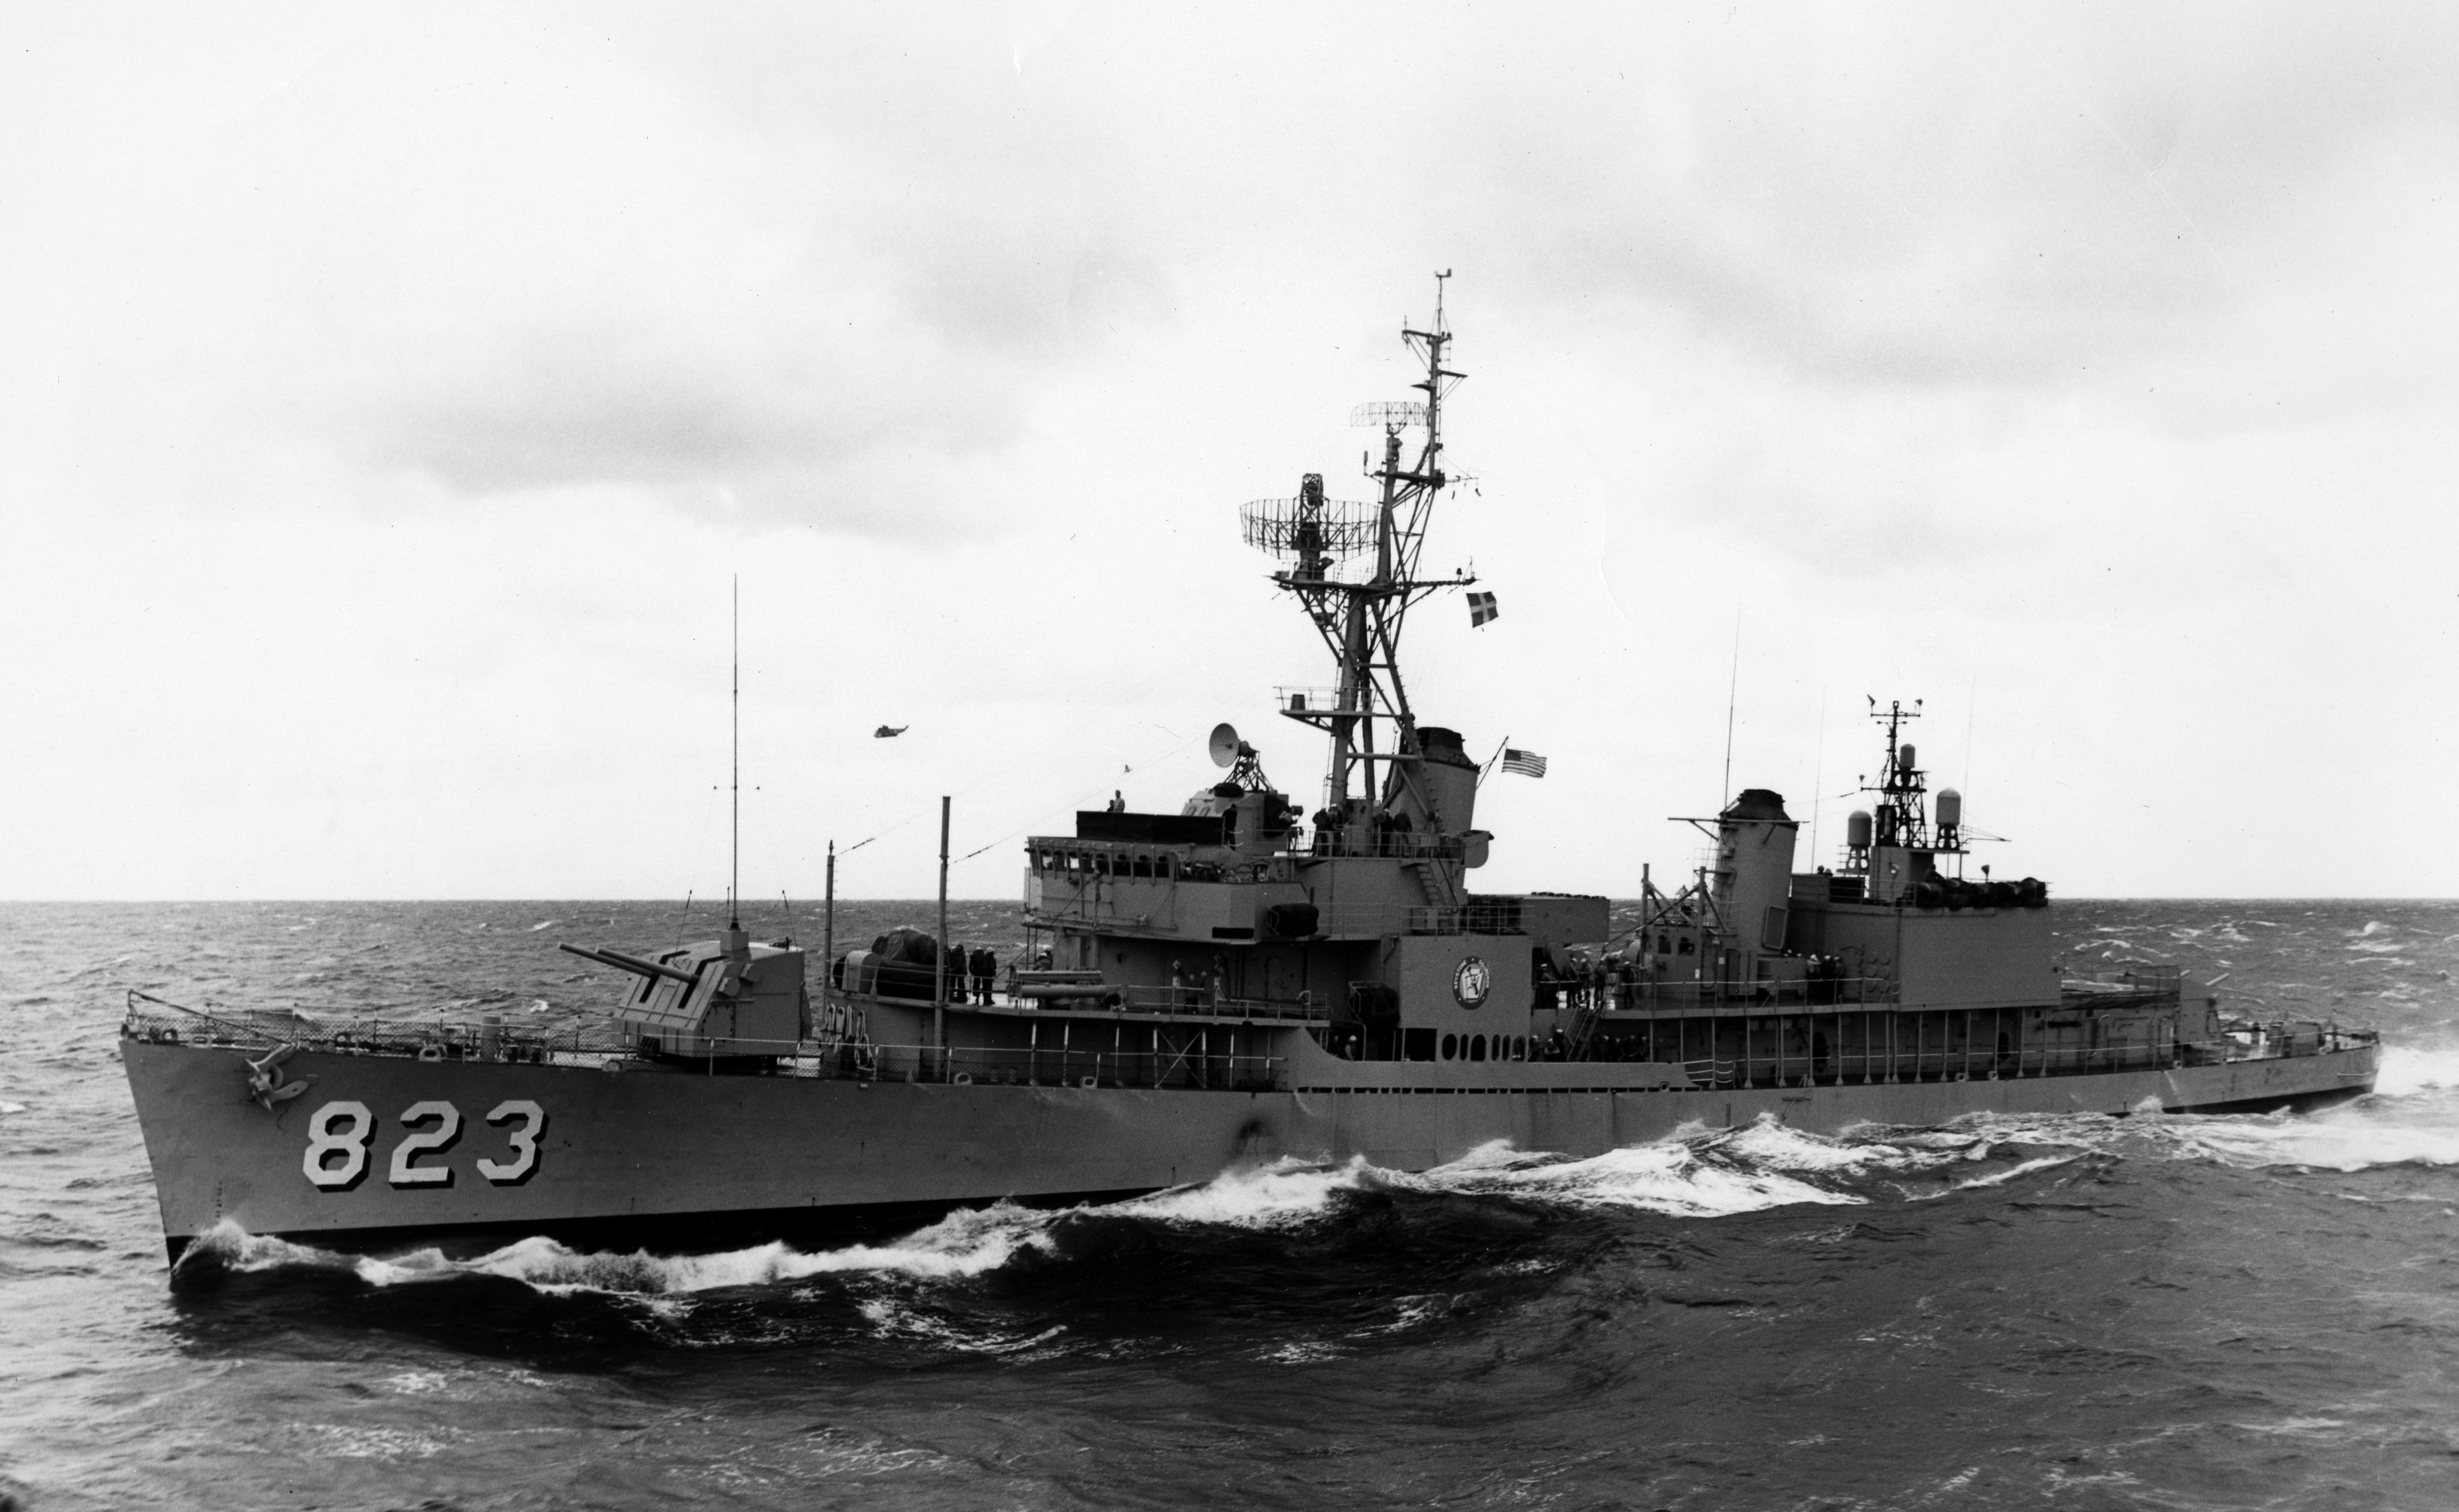 Der versunkene Zerstörer USS Samuel B. Roberts aus dem Zweiten Weltkrieg wurde im Pazifischen Ozean in einer Tiefe von 6,9 km gefunden